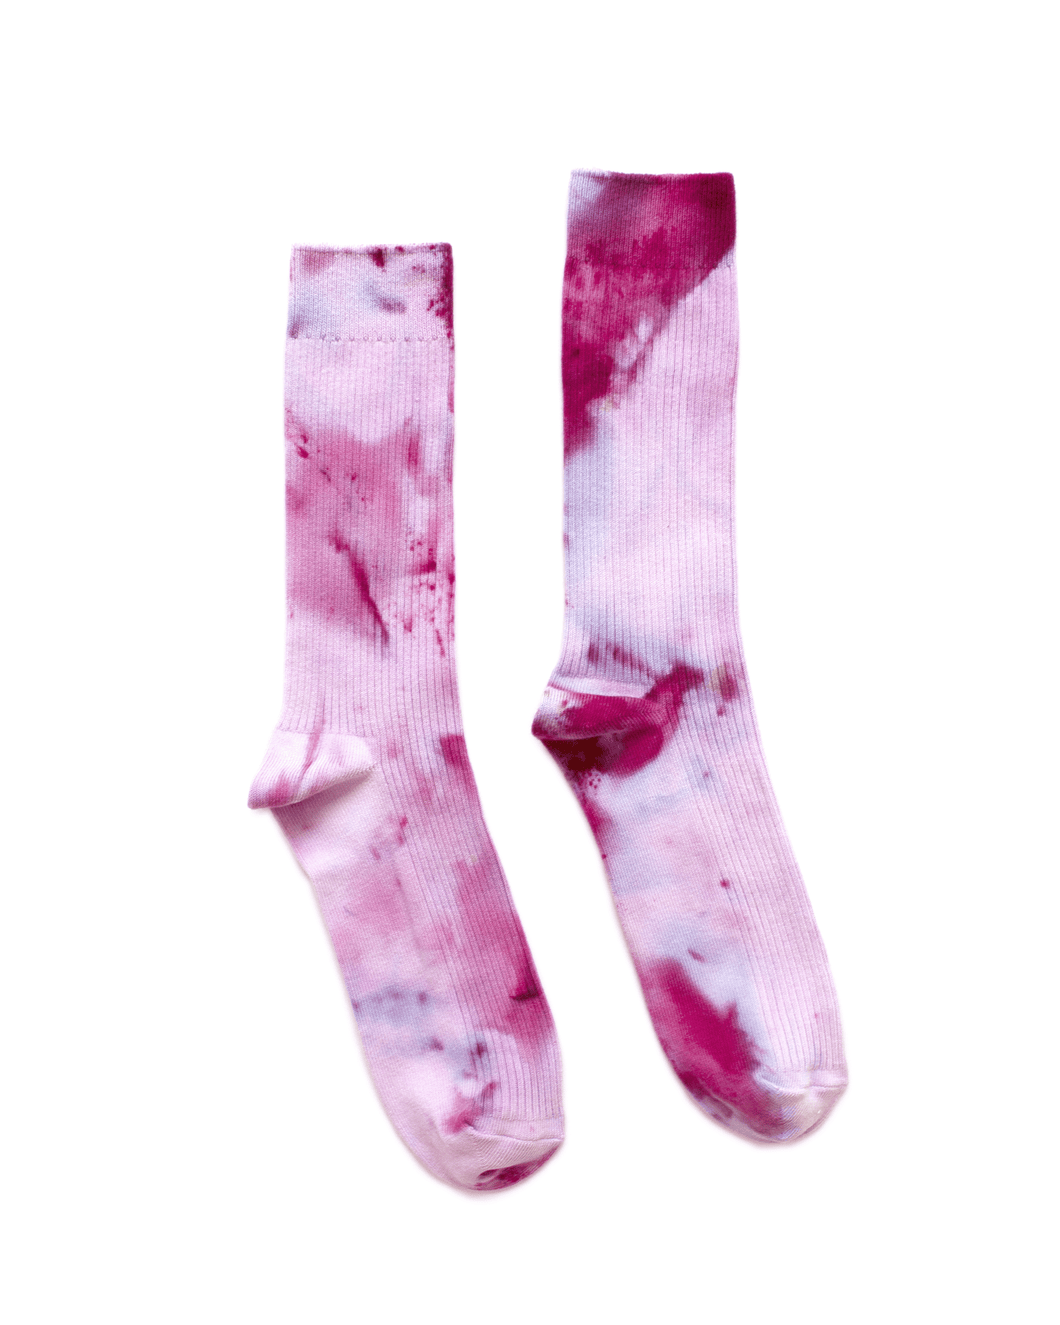 Dust Dye Socks - Peony Blooms